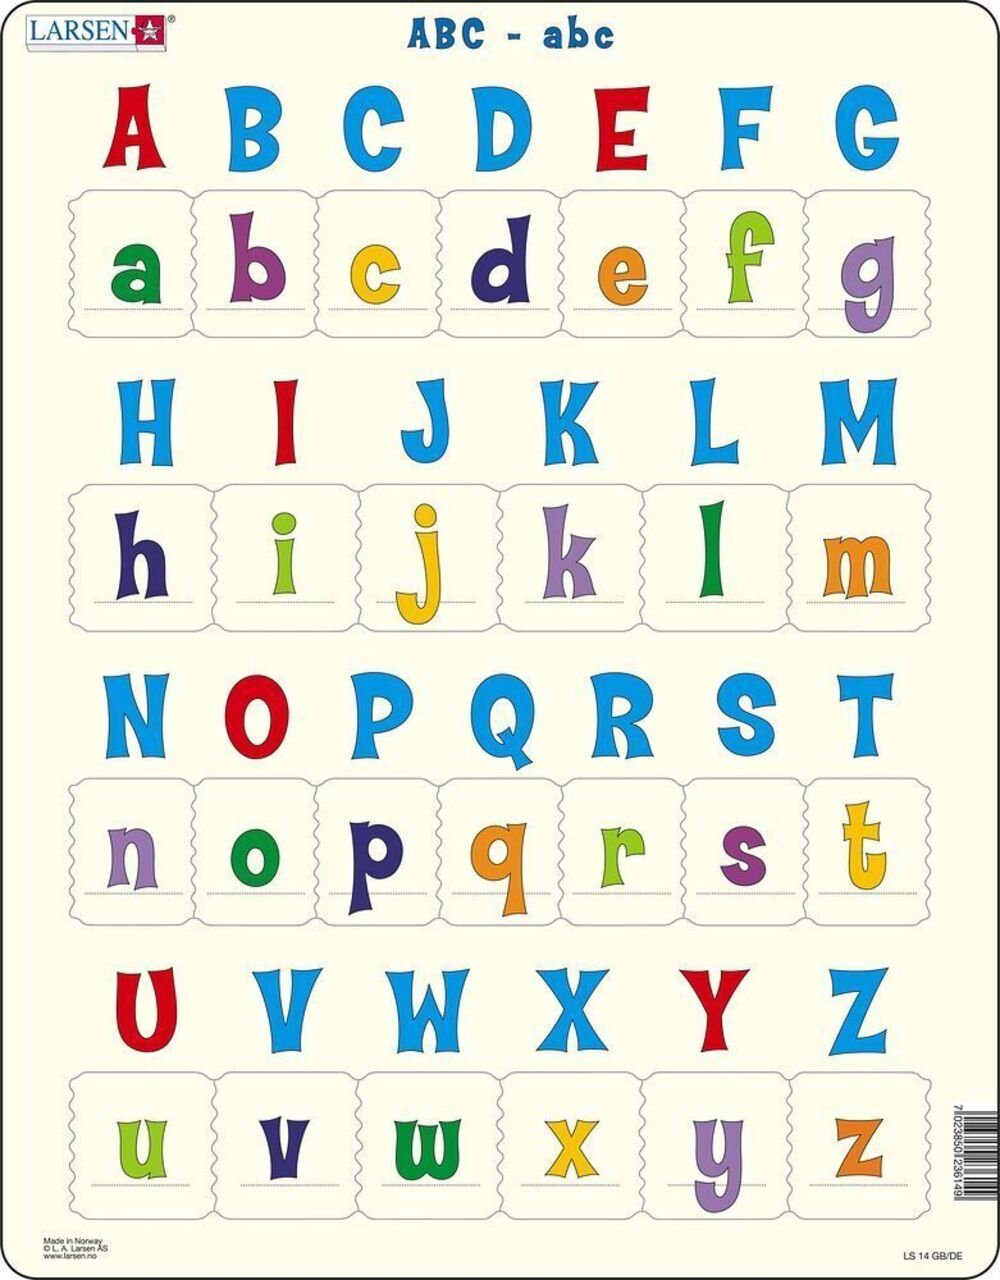 Media Verlag Puzzle ABC-abc (Kinderpuzzle), 29 Puzzleteile